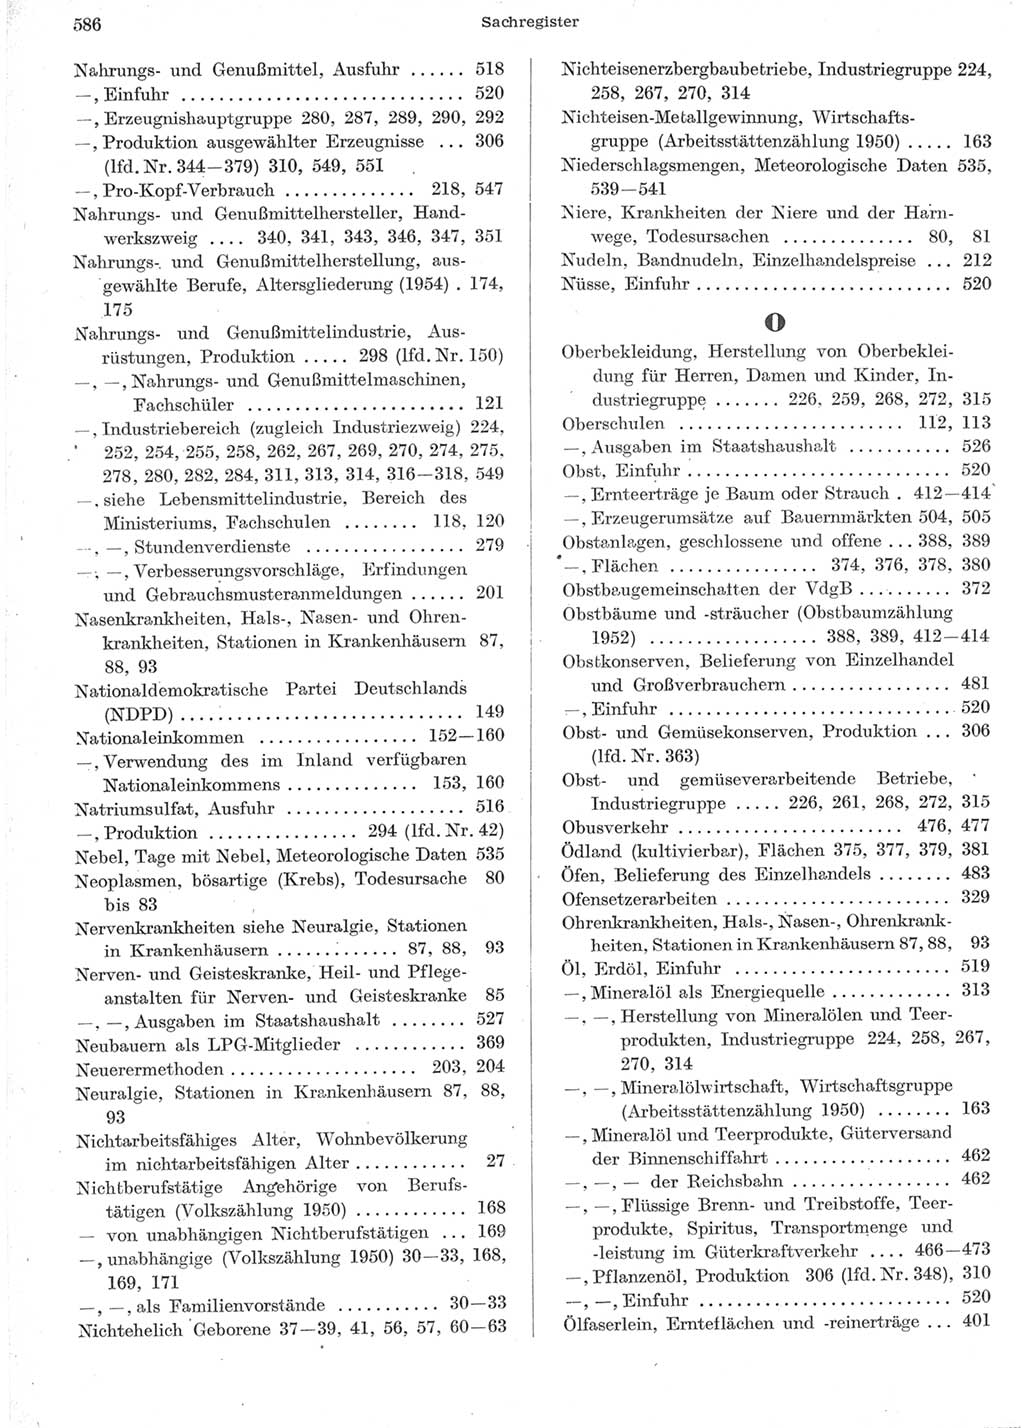 Statistisches Jahrbuch der Deutschen Demokratischen Republik (DDR) 1957, Seite 586 (Stat. Jb. DDR 1957, S. 586)